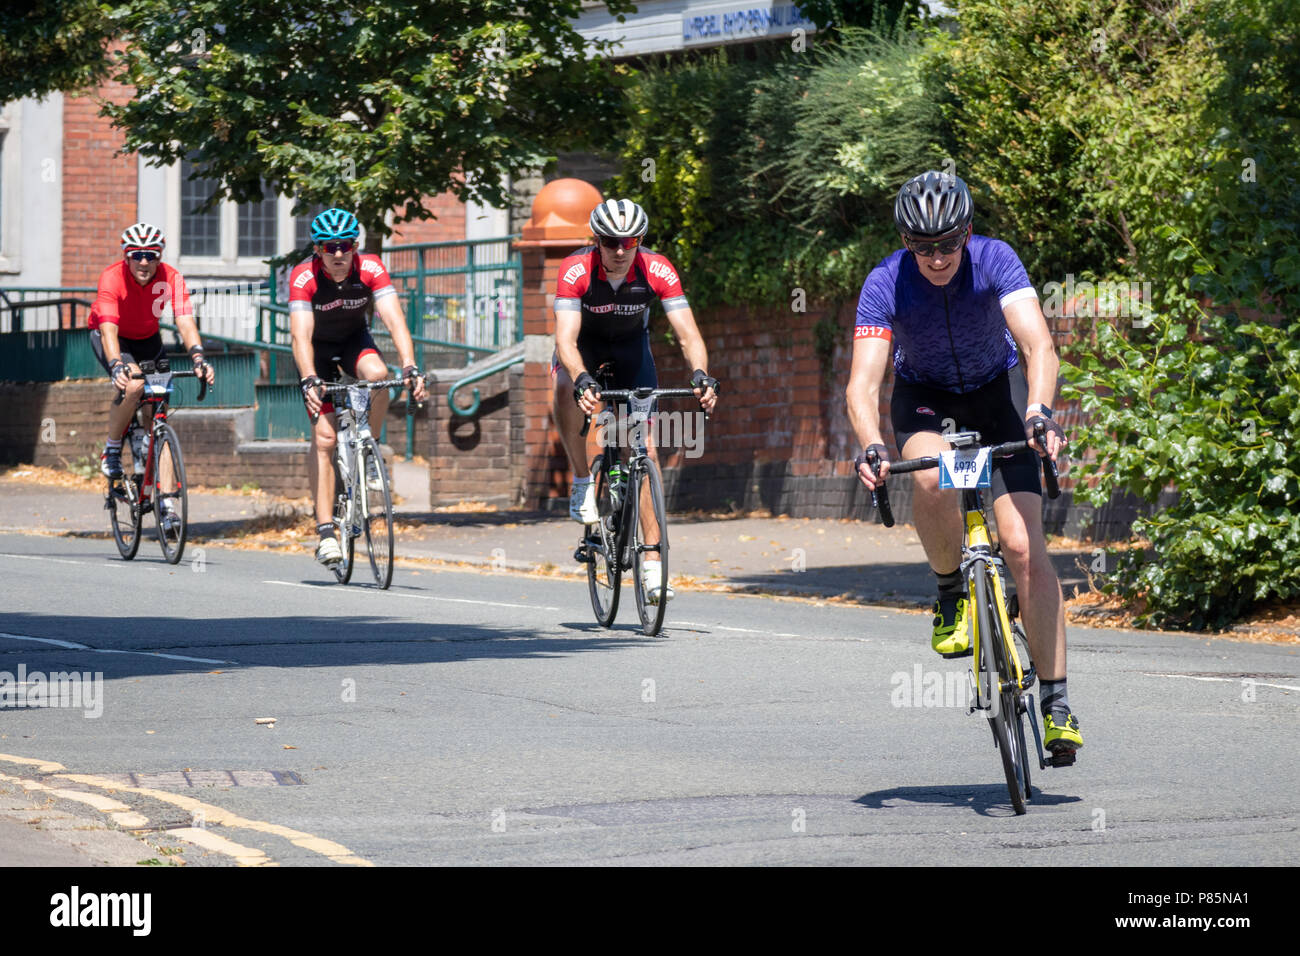 CARDIFF, WALES/UK - 8 juillet : Les cyclistes participant à l'événement cycliste Velothon à Cardiff au Pays de Galles, le 8 juillet 2018. Quatre personnes non identifiées Banque D'Images